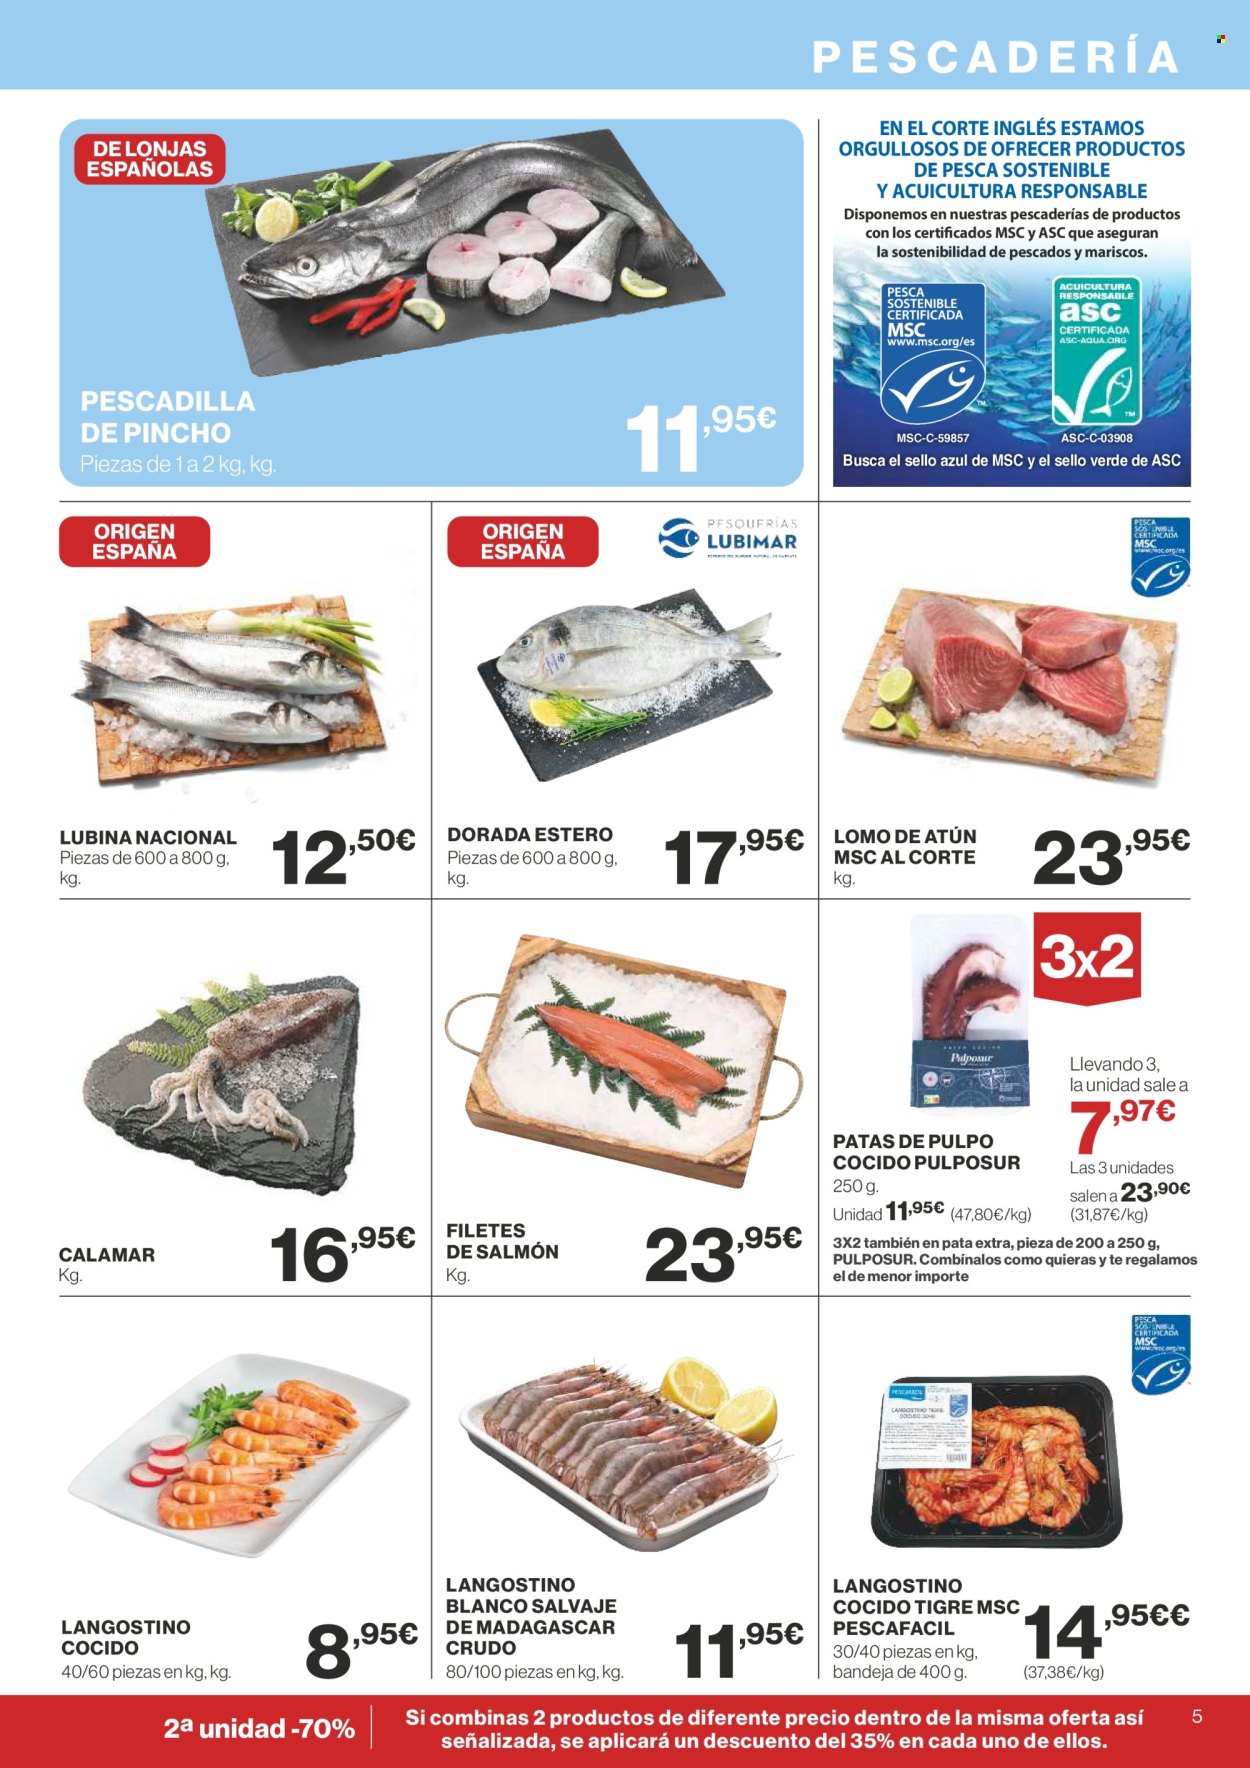 thumbnail - Folleto actual Supercor supermercados - 25/04/24 - 08/05/24 - Ventas - atún, calamar, langostino, lubina, mariscos, pescadilla, pulpo, pescado, filete de salmón, filete de pescado, langostino cocido. Página 5.